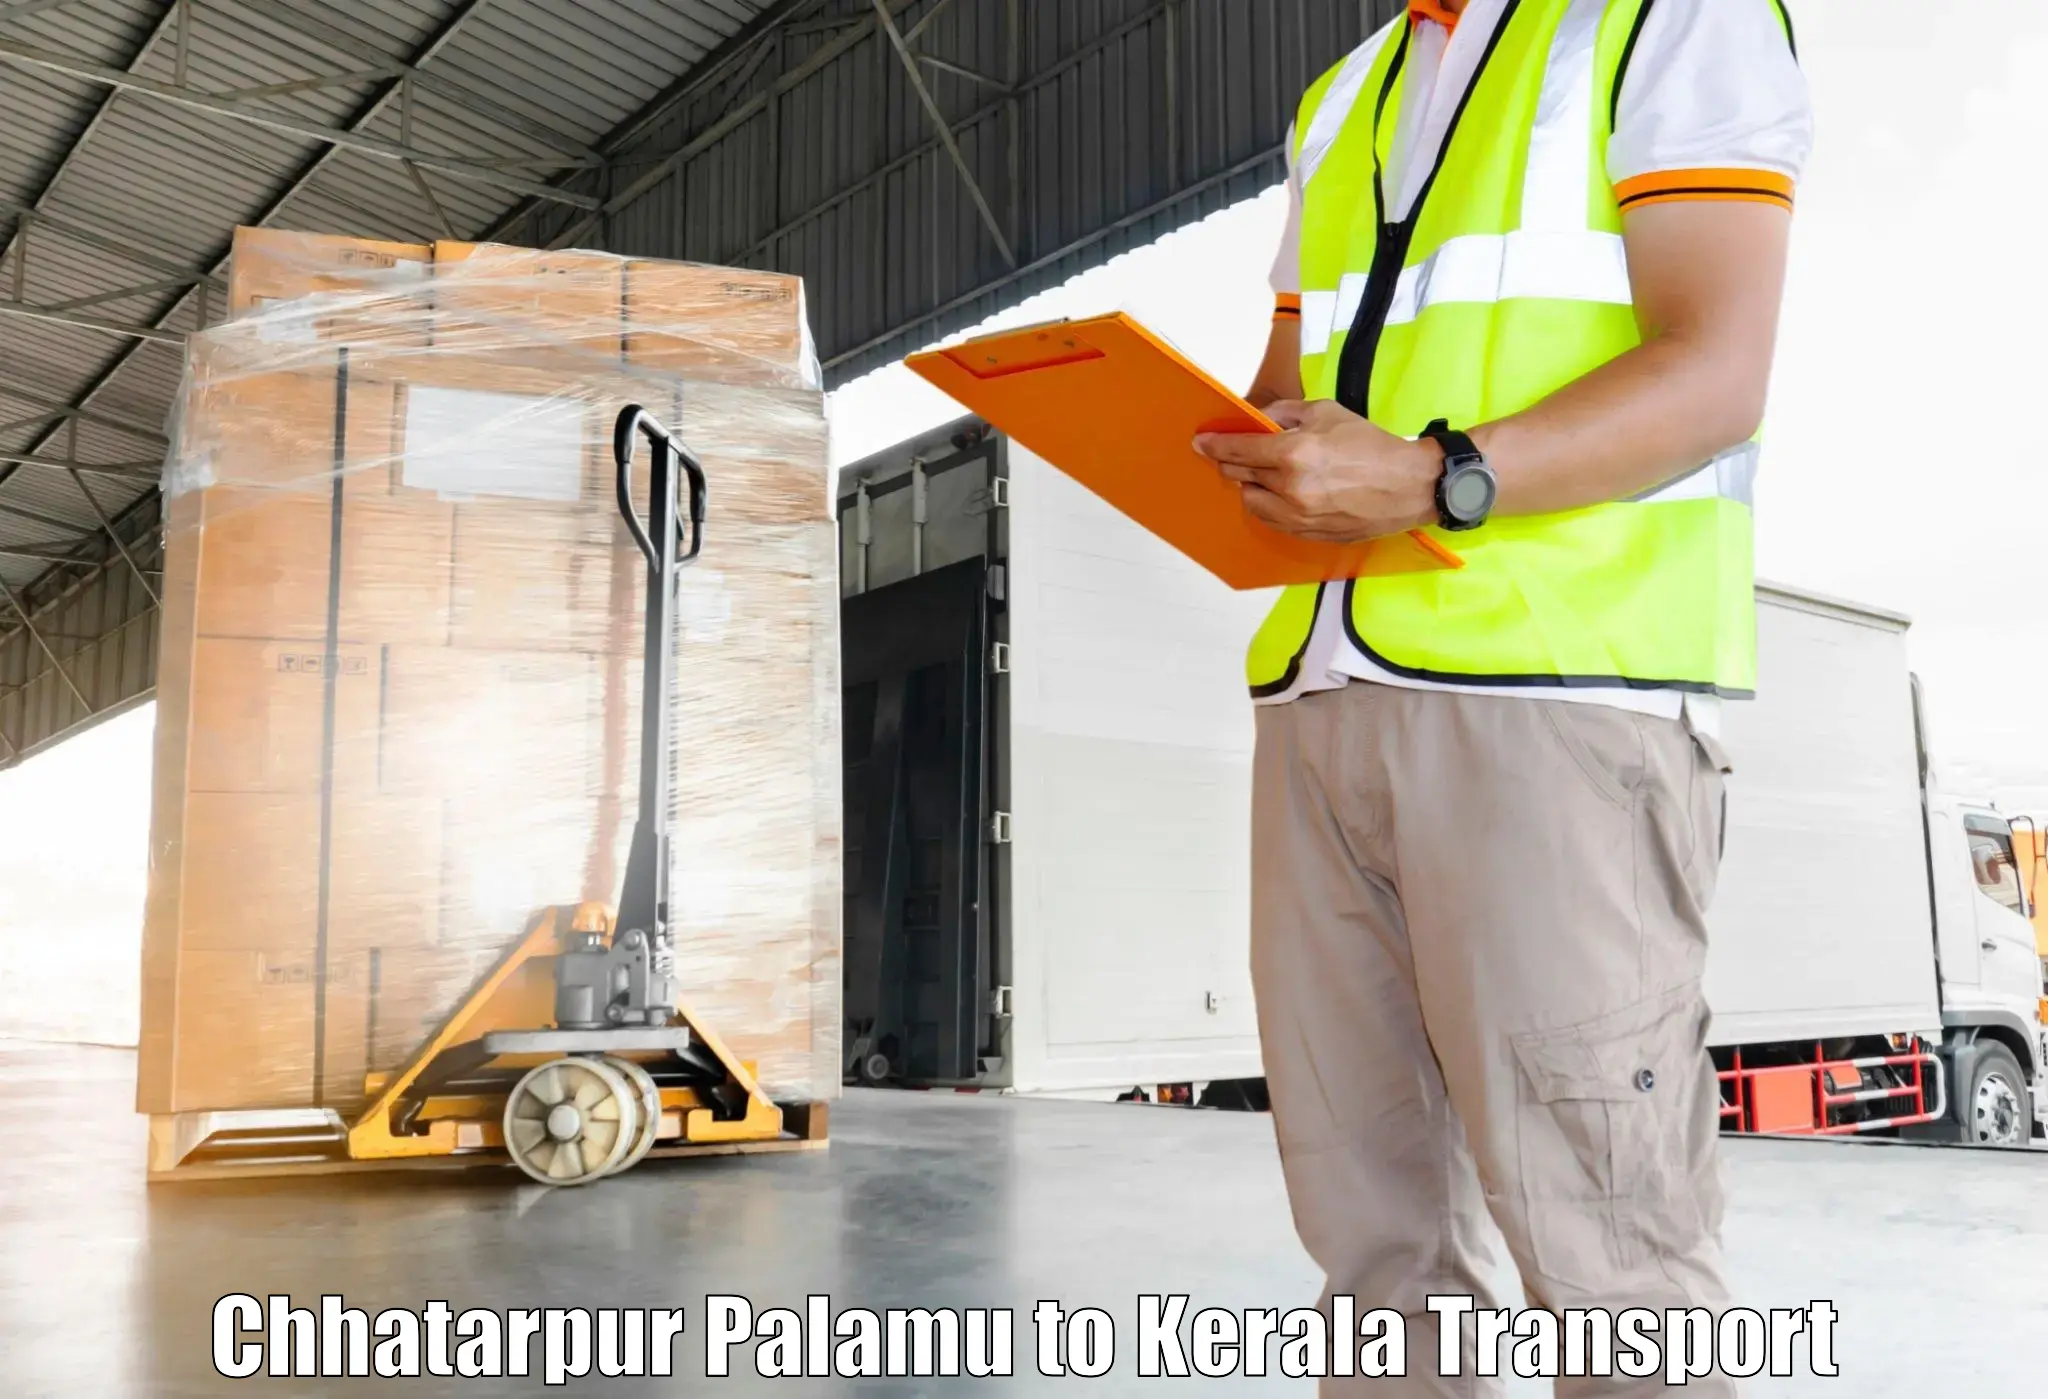 Lorry transport service Chhatarpur Palamu to Kanjiramattom